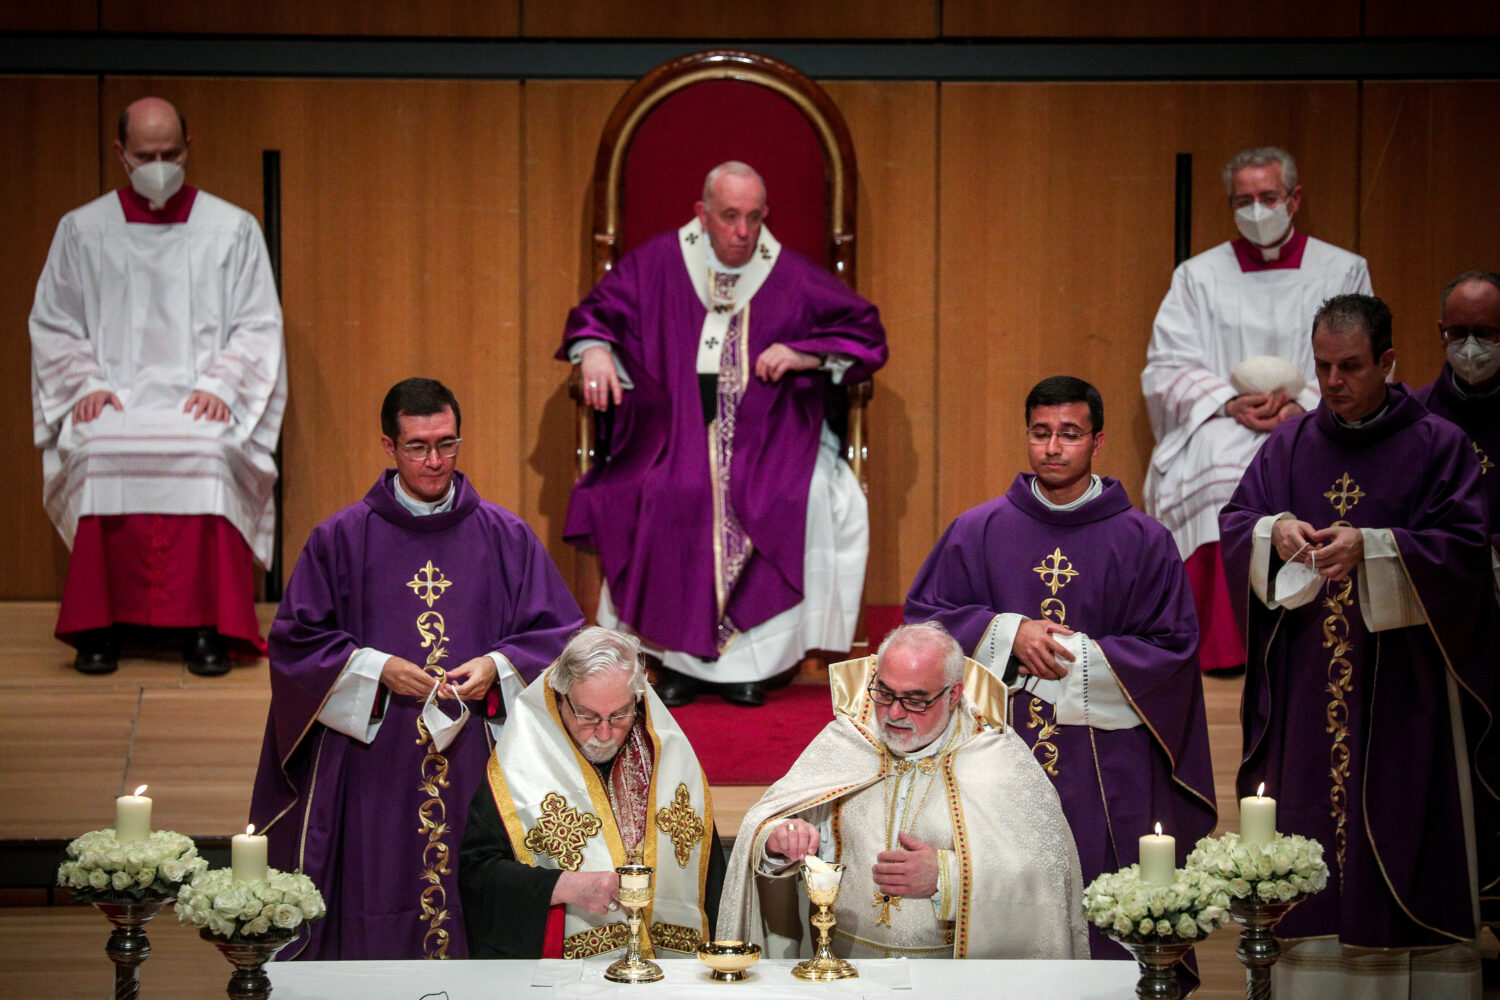 Πάπας Φραγκίσκος: Τέλεσε Θεία Λειτουργία στο Μέγαρο Μουσικής